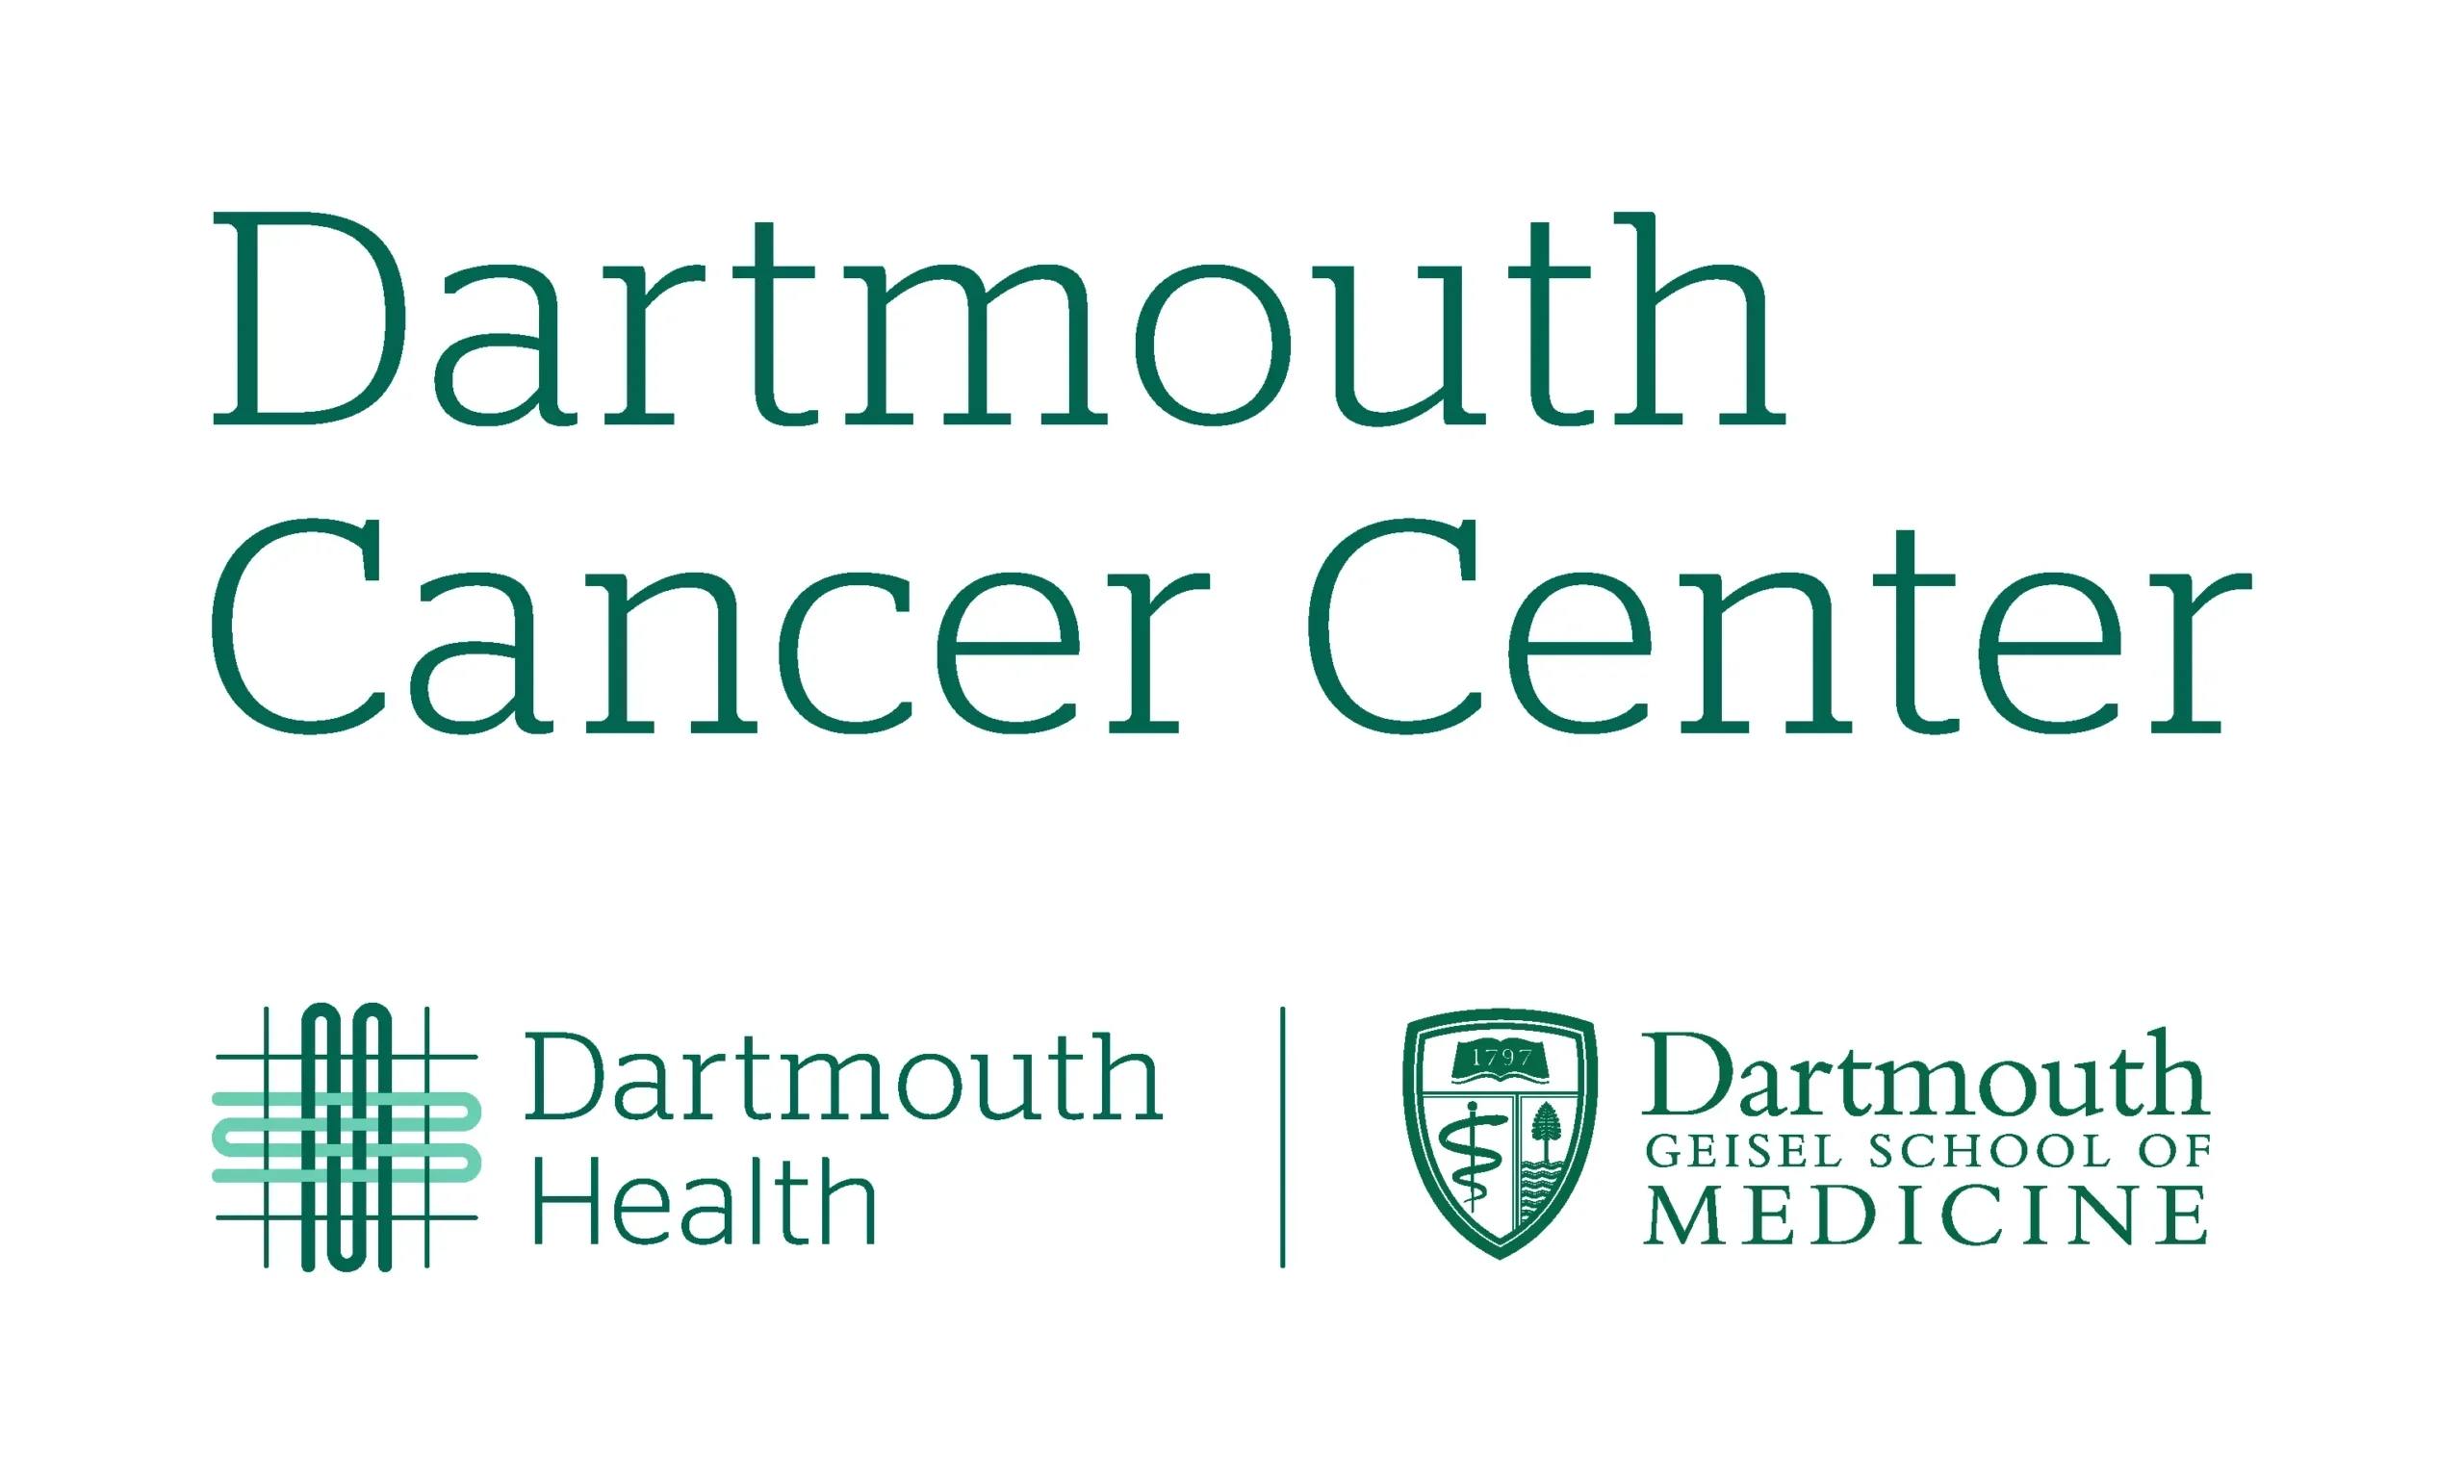 Dartmouth Cancer Center logo